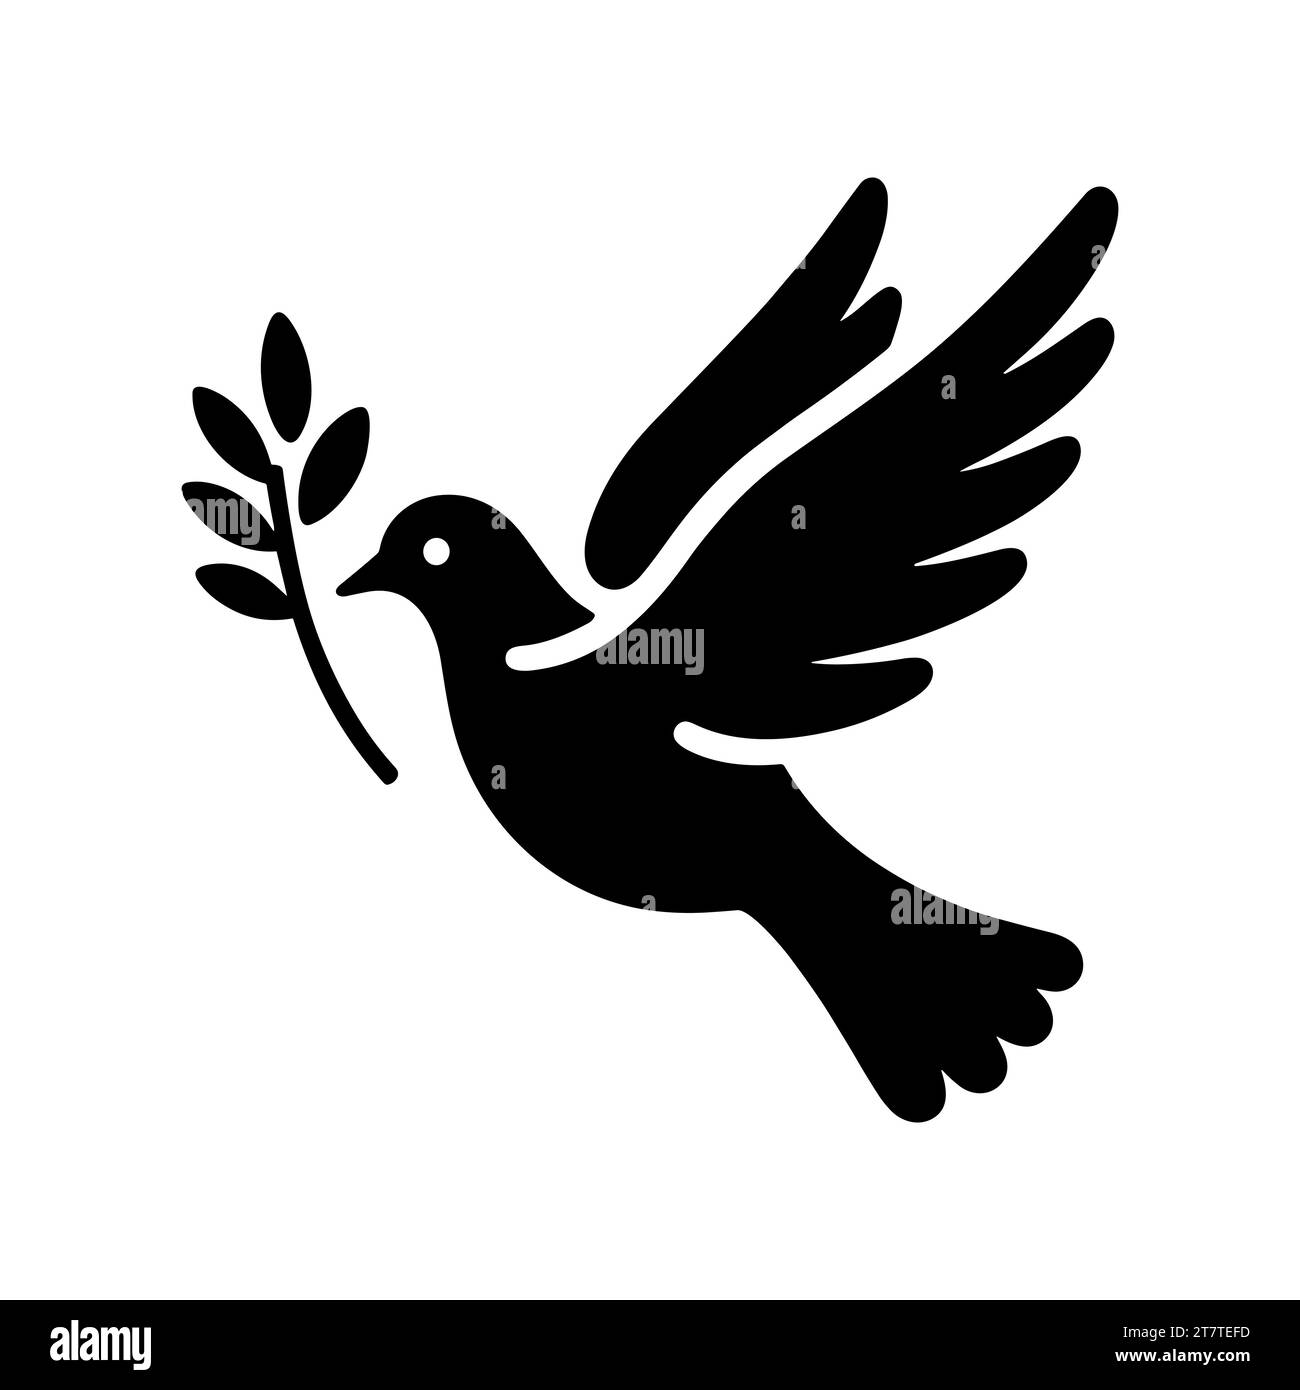 Icône colombe. Silhouette noire d'une colombe en vol portant une branche d'olivier sur fond blanc. Symbole de paix. Icône religieuse. Illustration vectorielle. Illustration de Vecteur